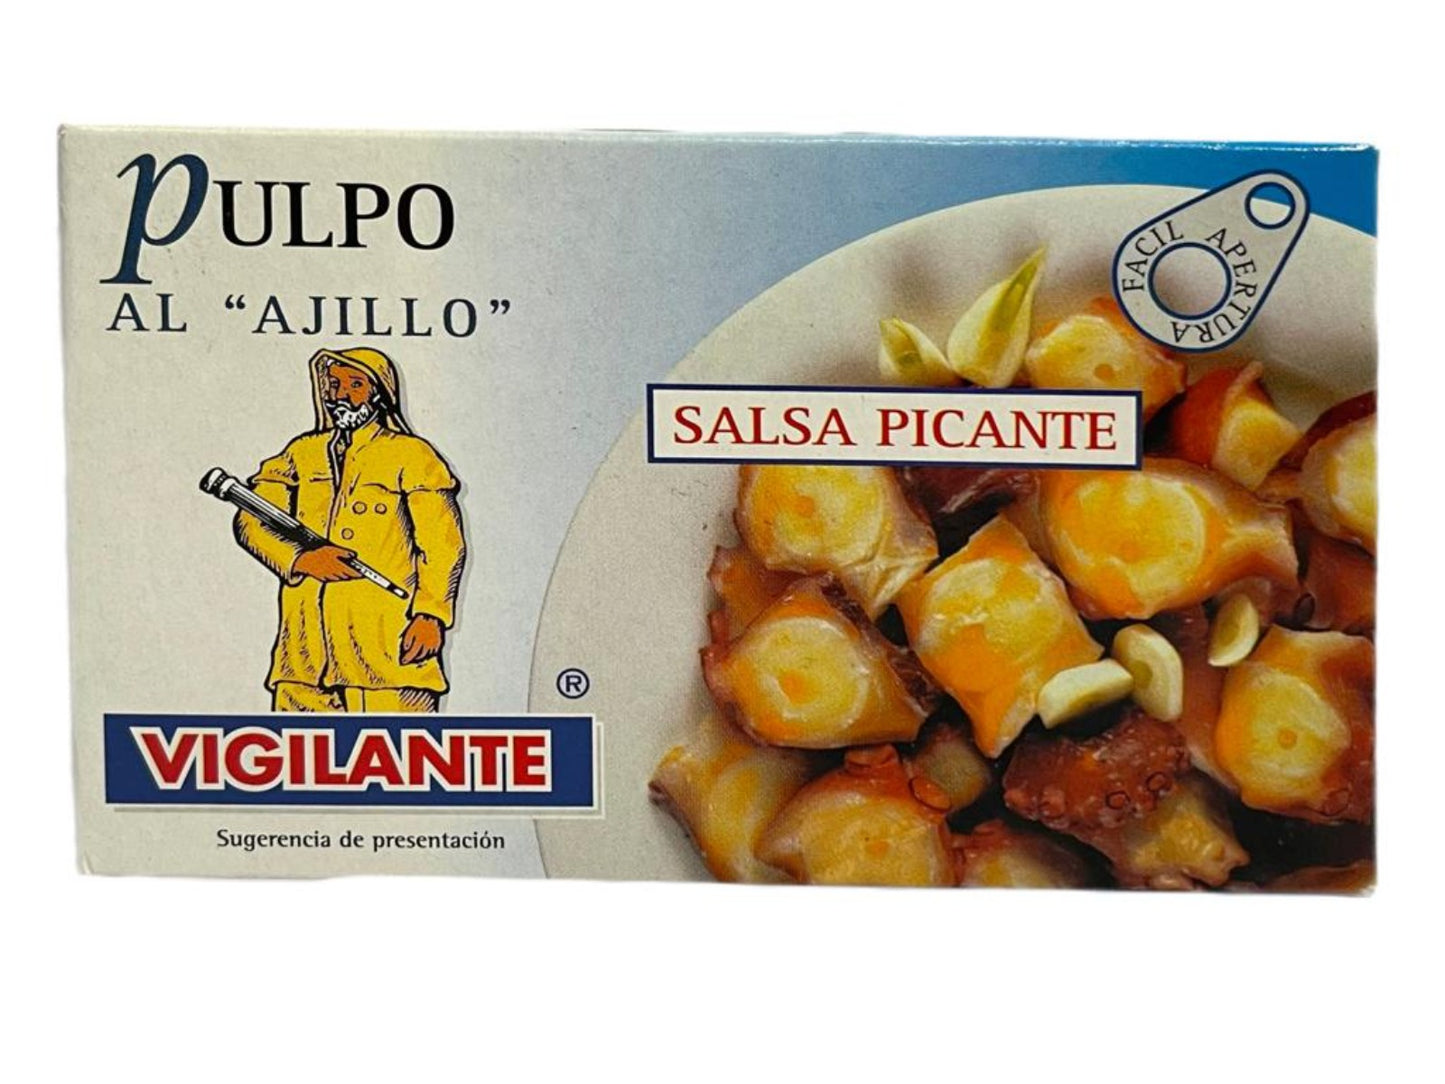 Vigilante Pulpo Al "Ajillo" Salsa Picante